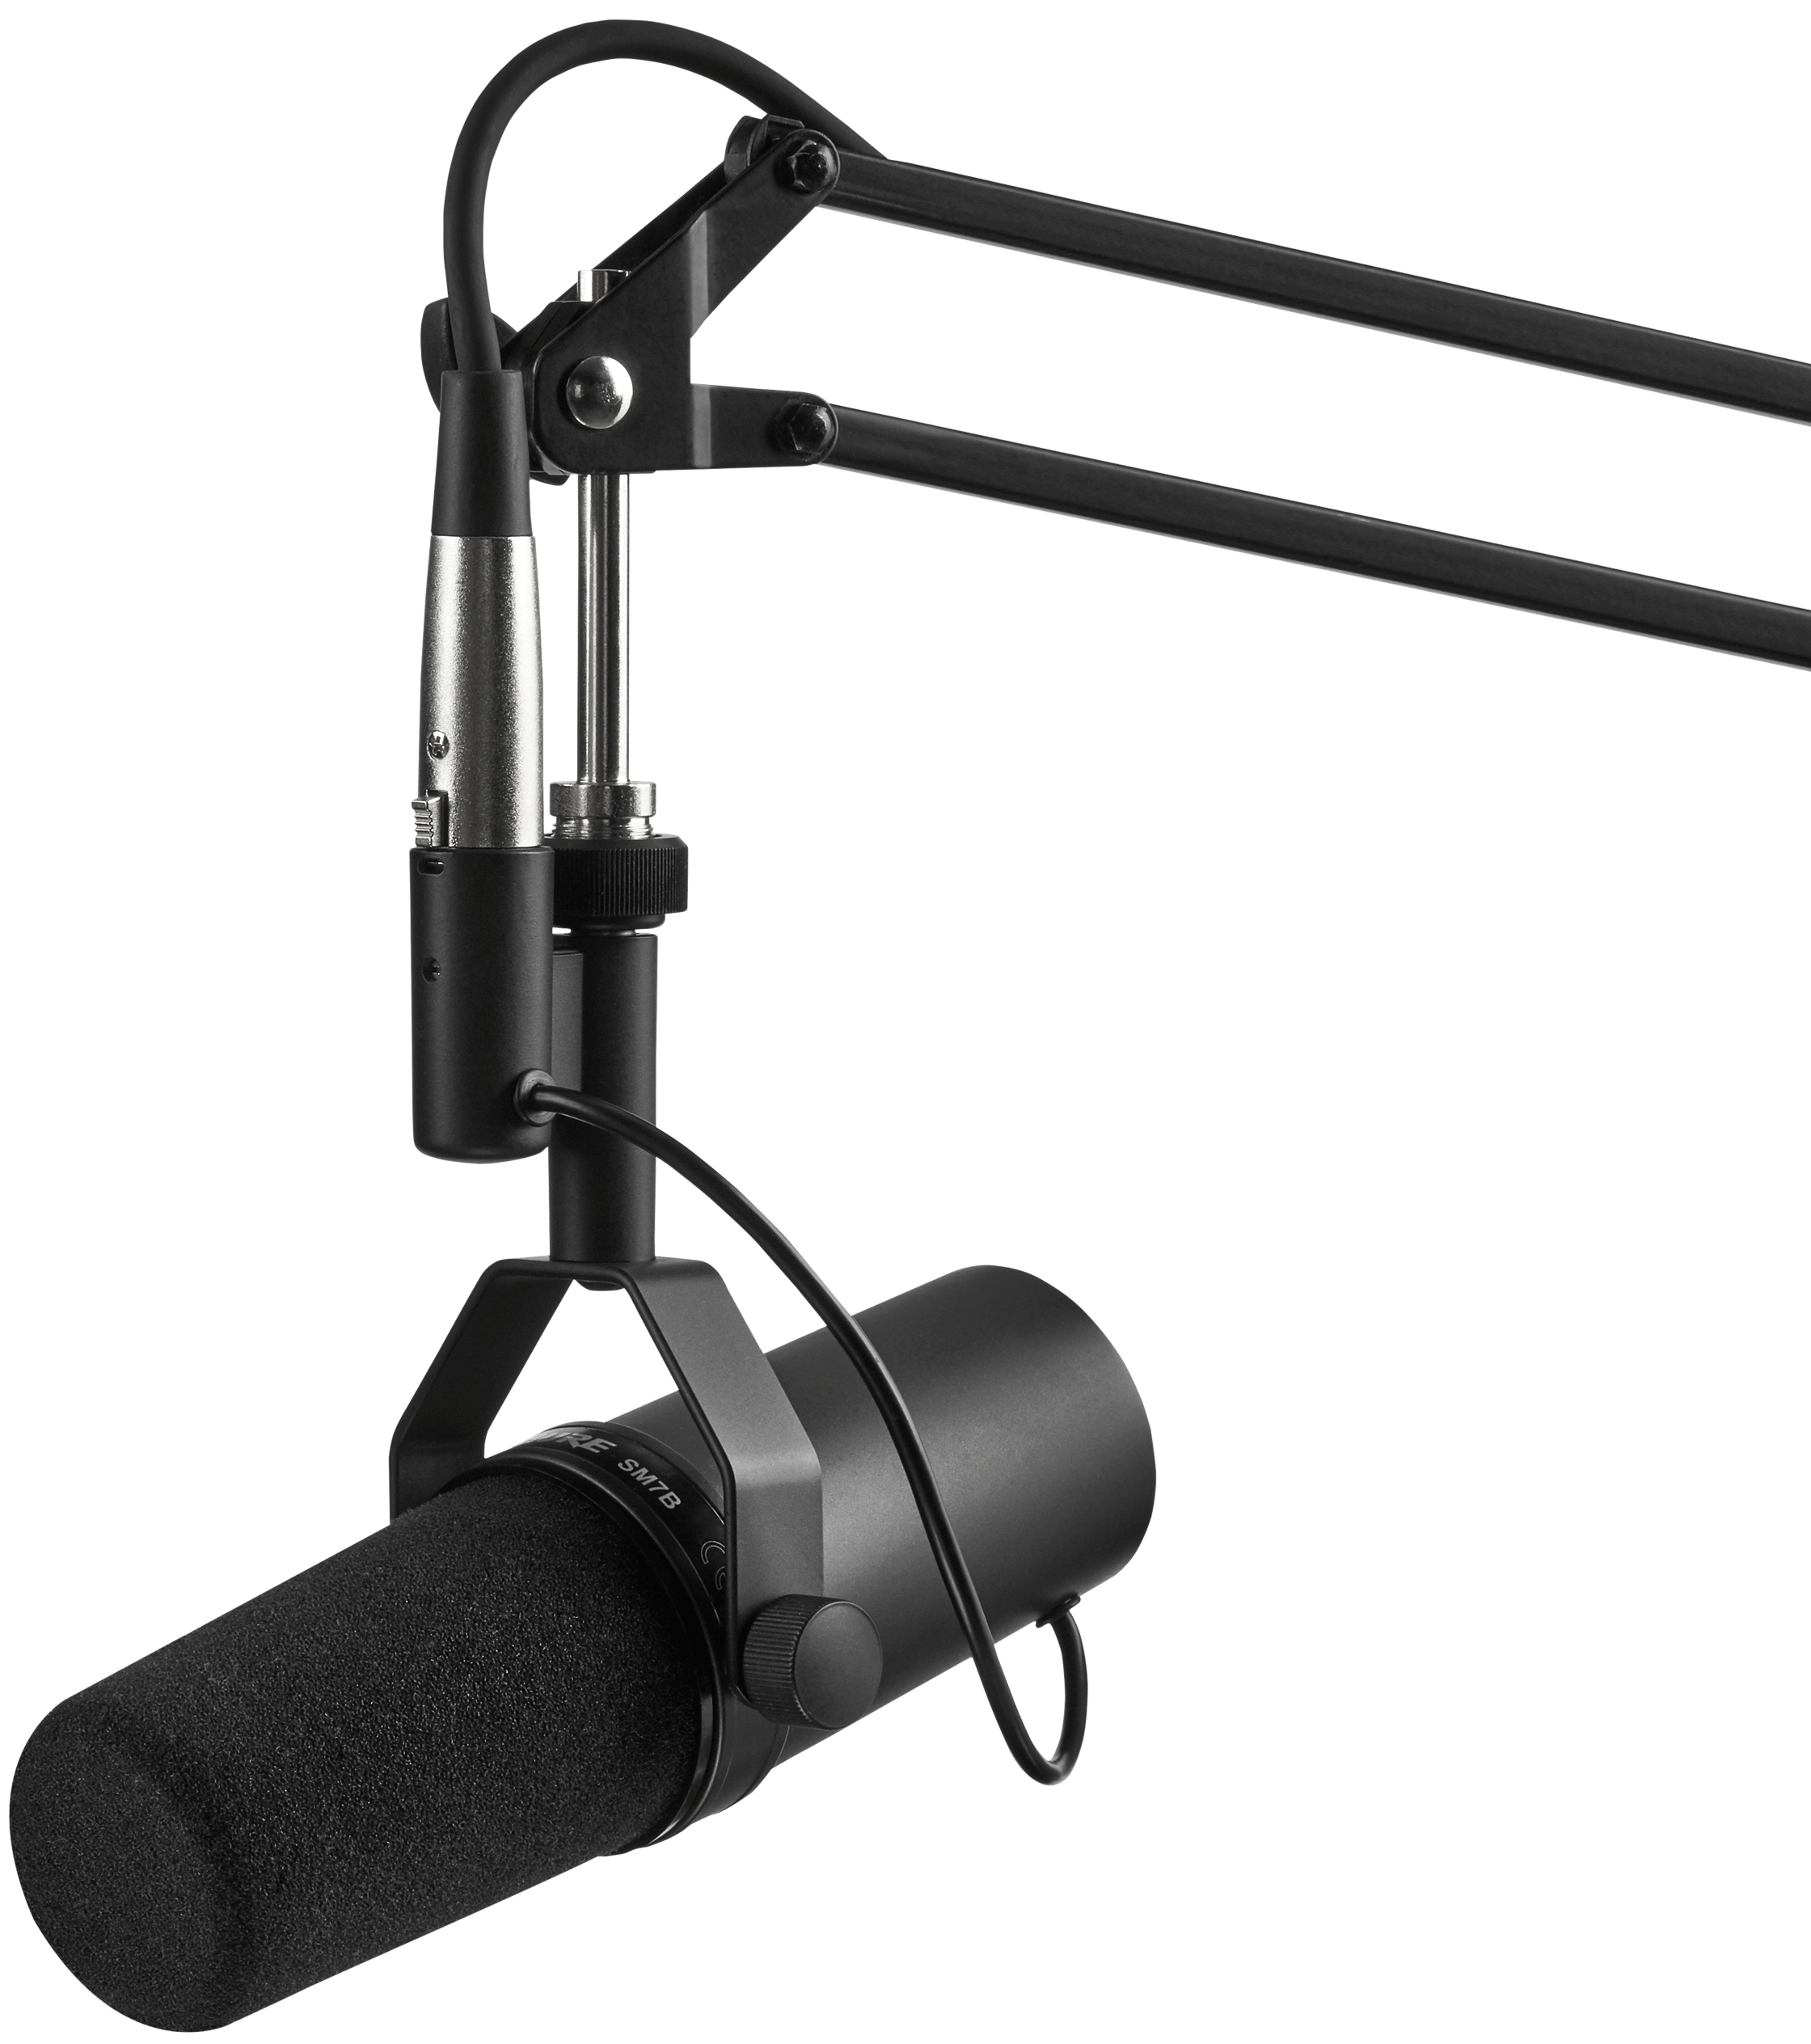 Shure - Microfone Shure SM7B